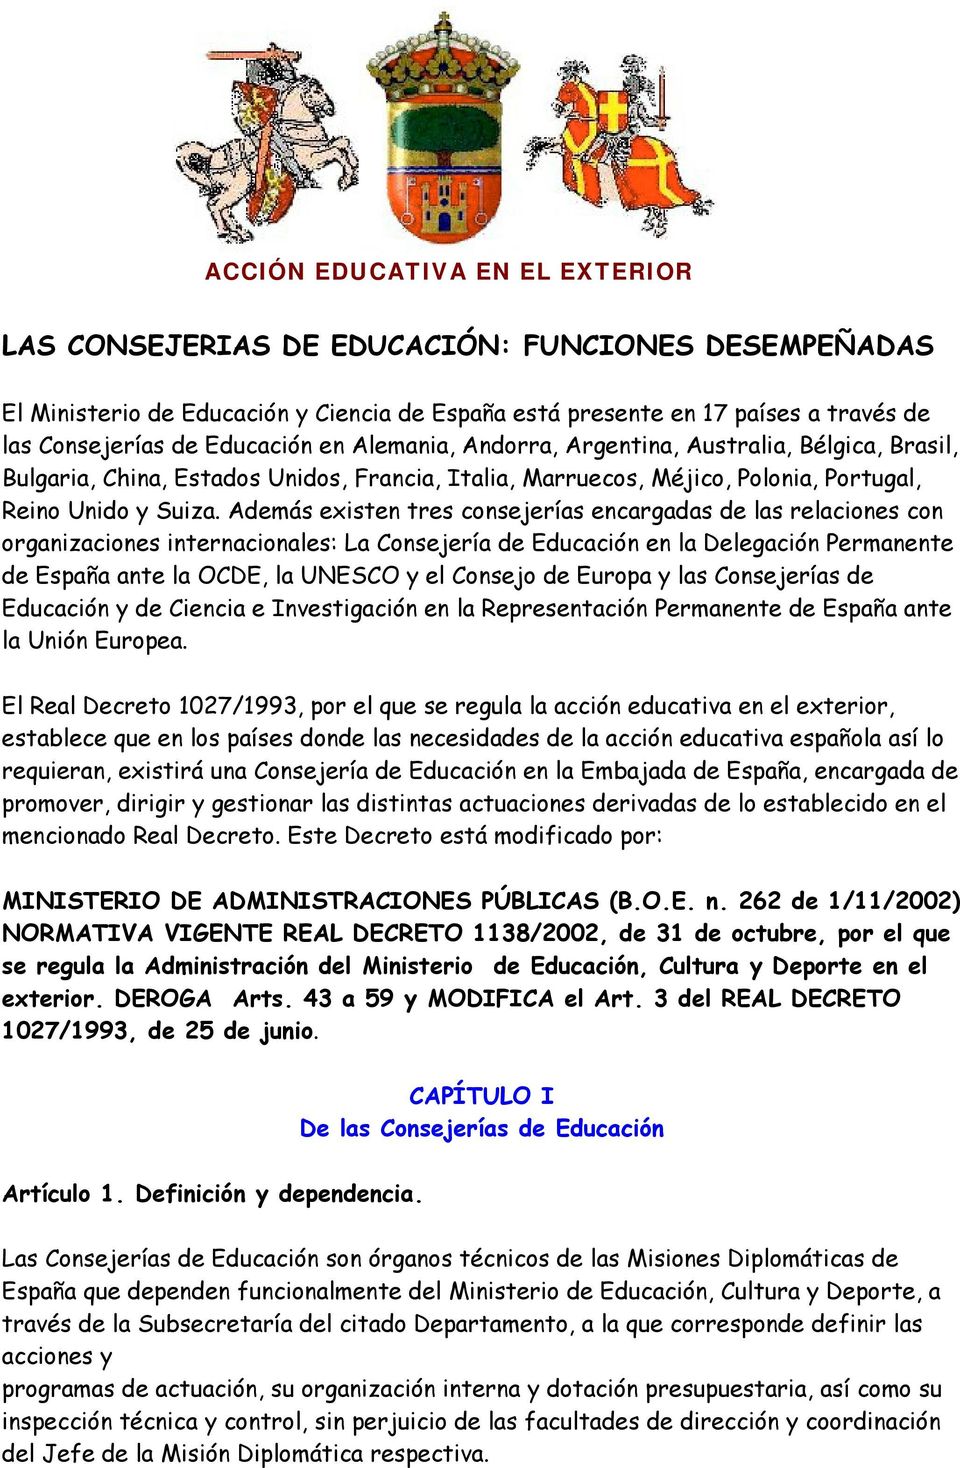 Además existen tres consejerías encargadas de las relaciones con organizaciones internacionales: La Consejería de Educación en la Delegación Permanente de España ante la OCDE, la UNESCO y el Consejo